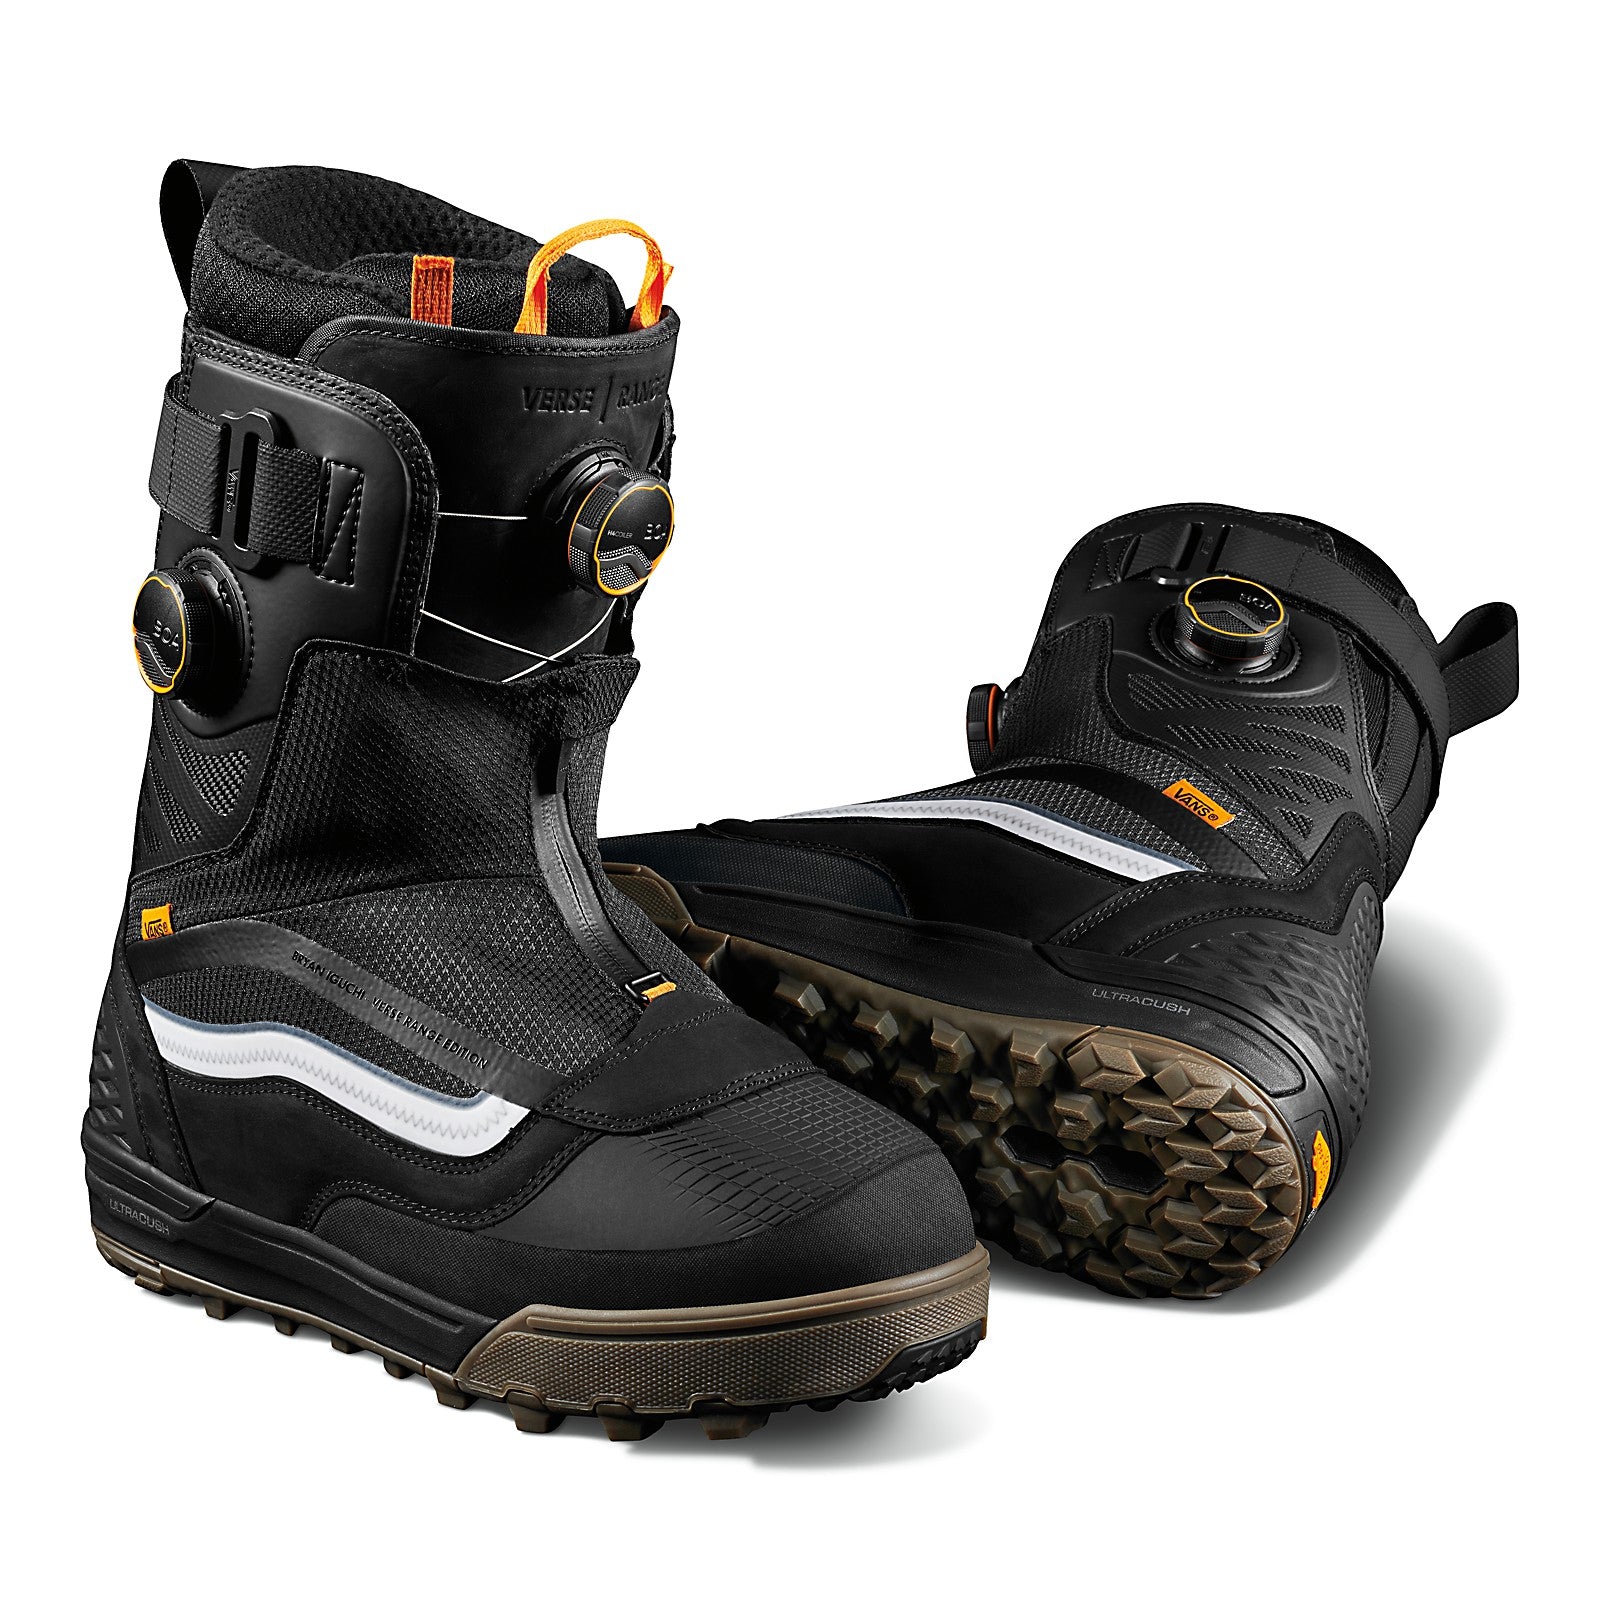 Vans BRYAN IGUCHI VERSE RANGE EDITION Snowboard Boots - Black 2023 - | THURO